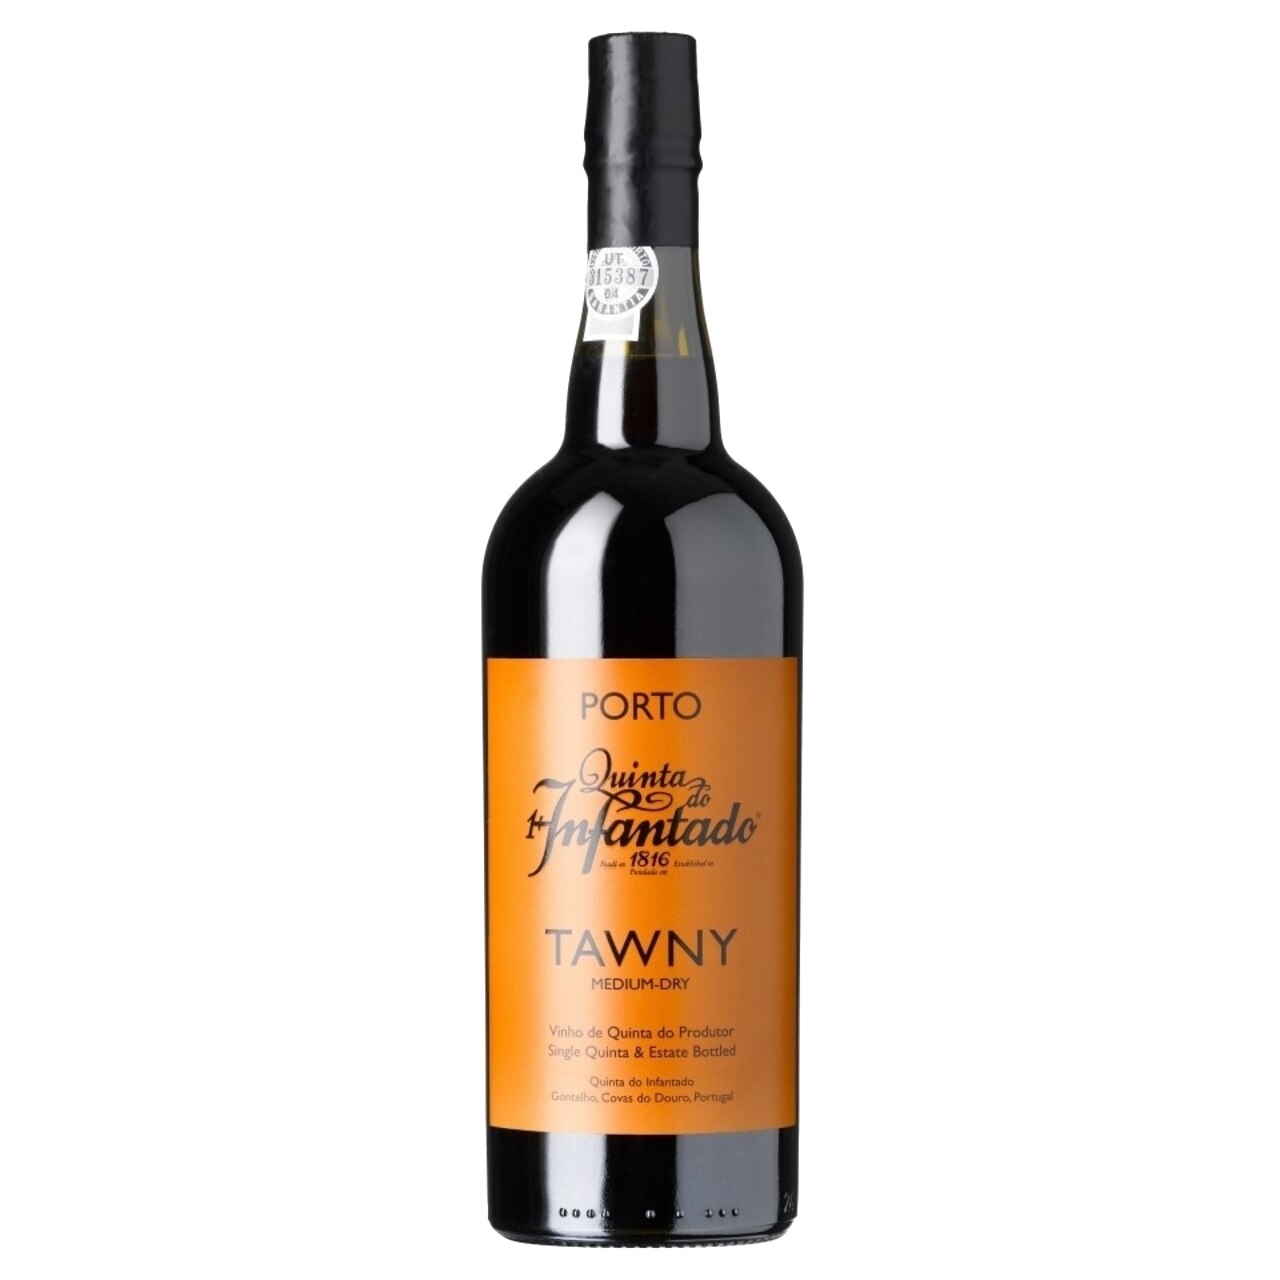 Vin Porto Quinta Tawny vol. 19,5% alc. 0.75l